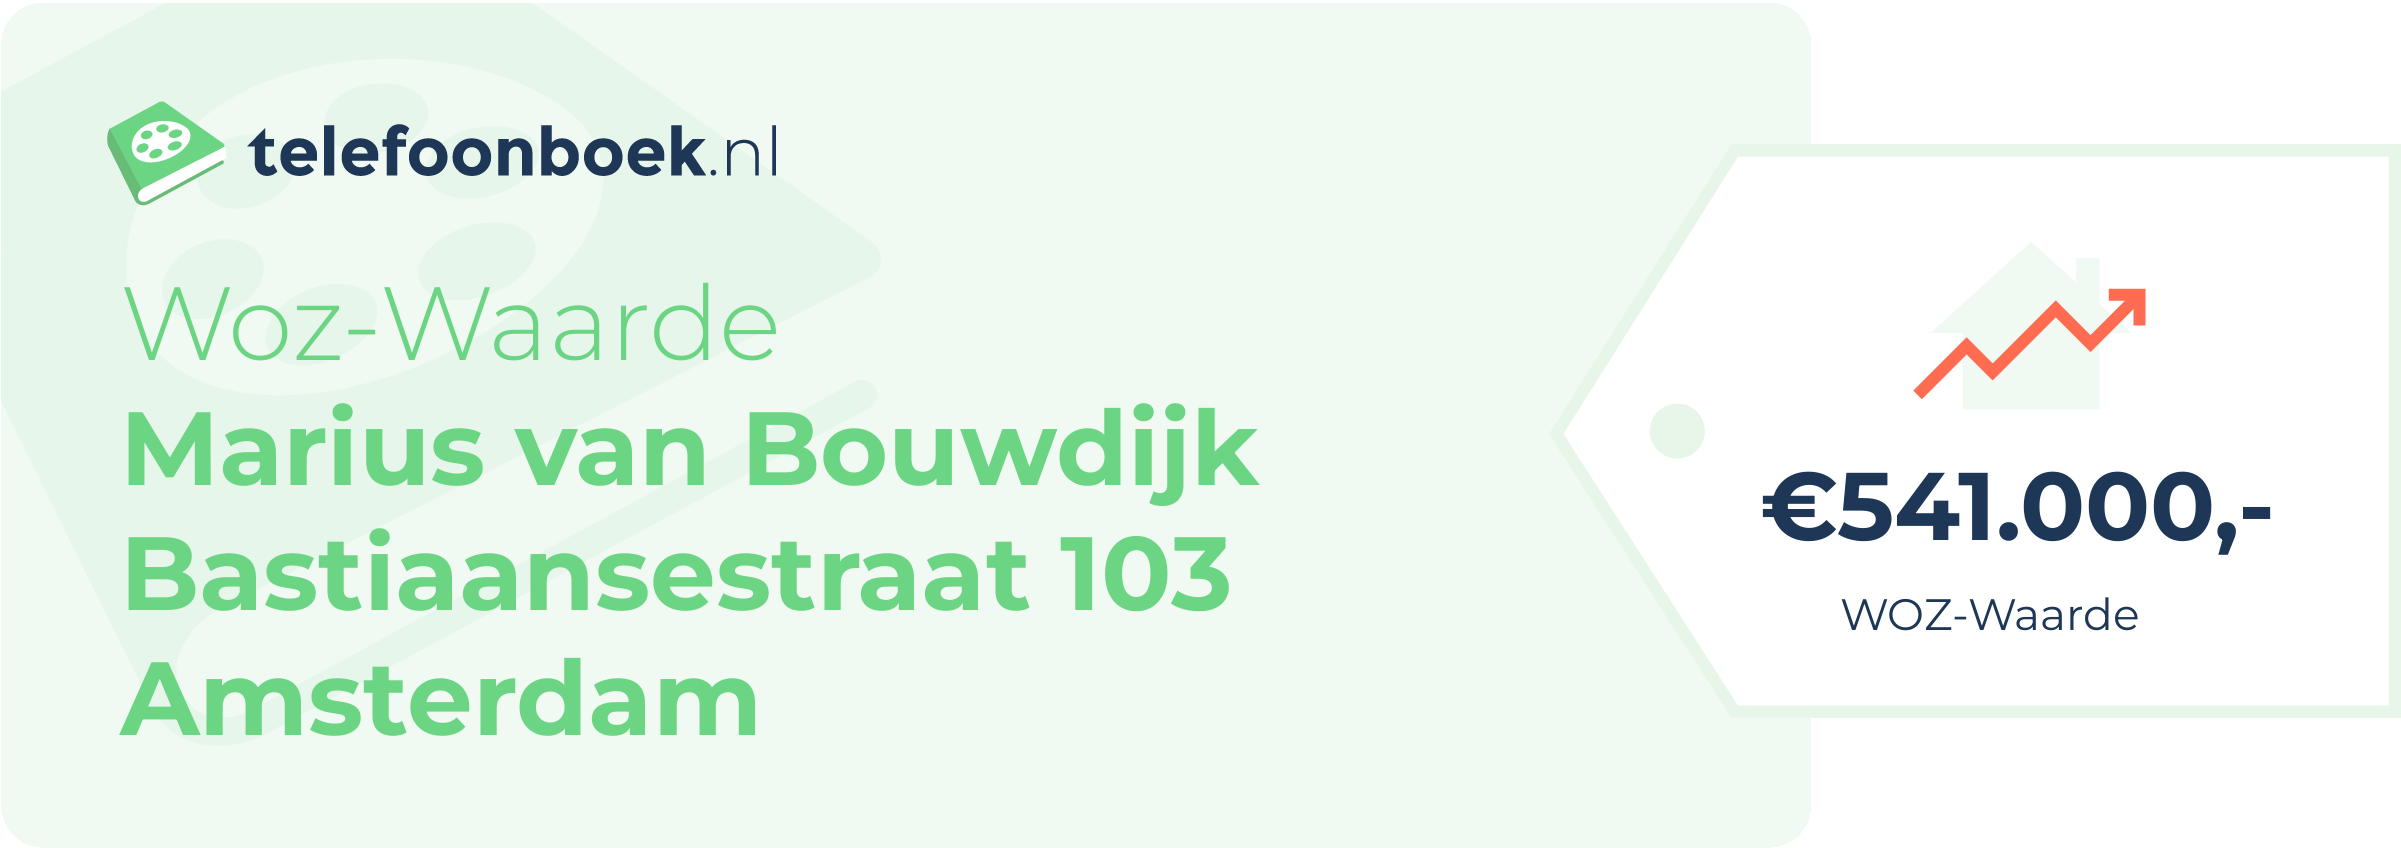 WOZ-waarde Marius Van Bouwdijk Bastiaansestraat 103 Amsterdam